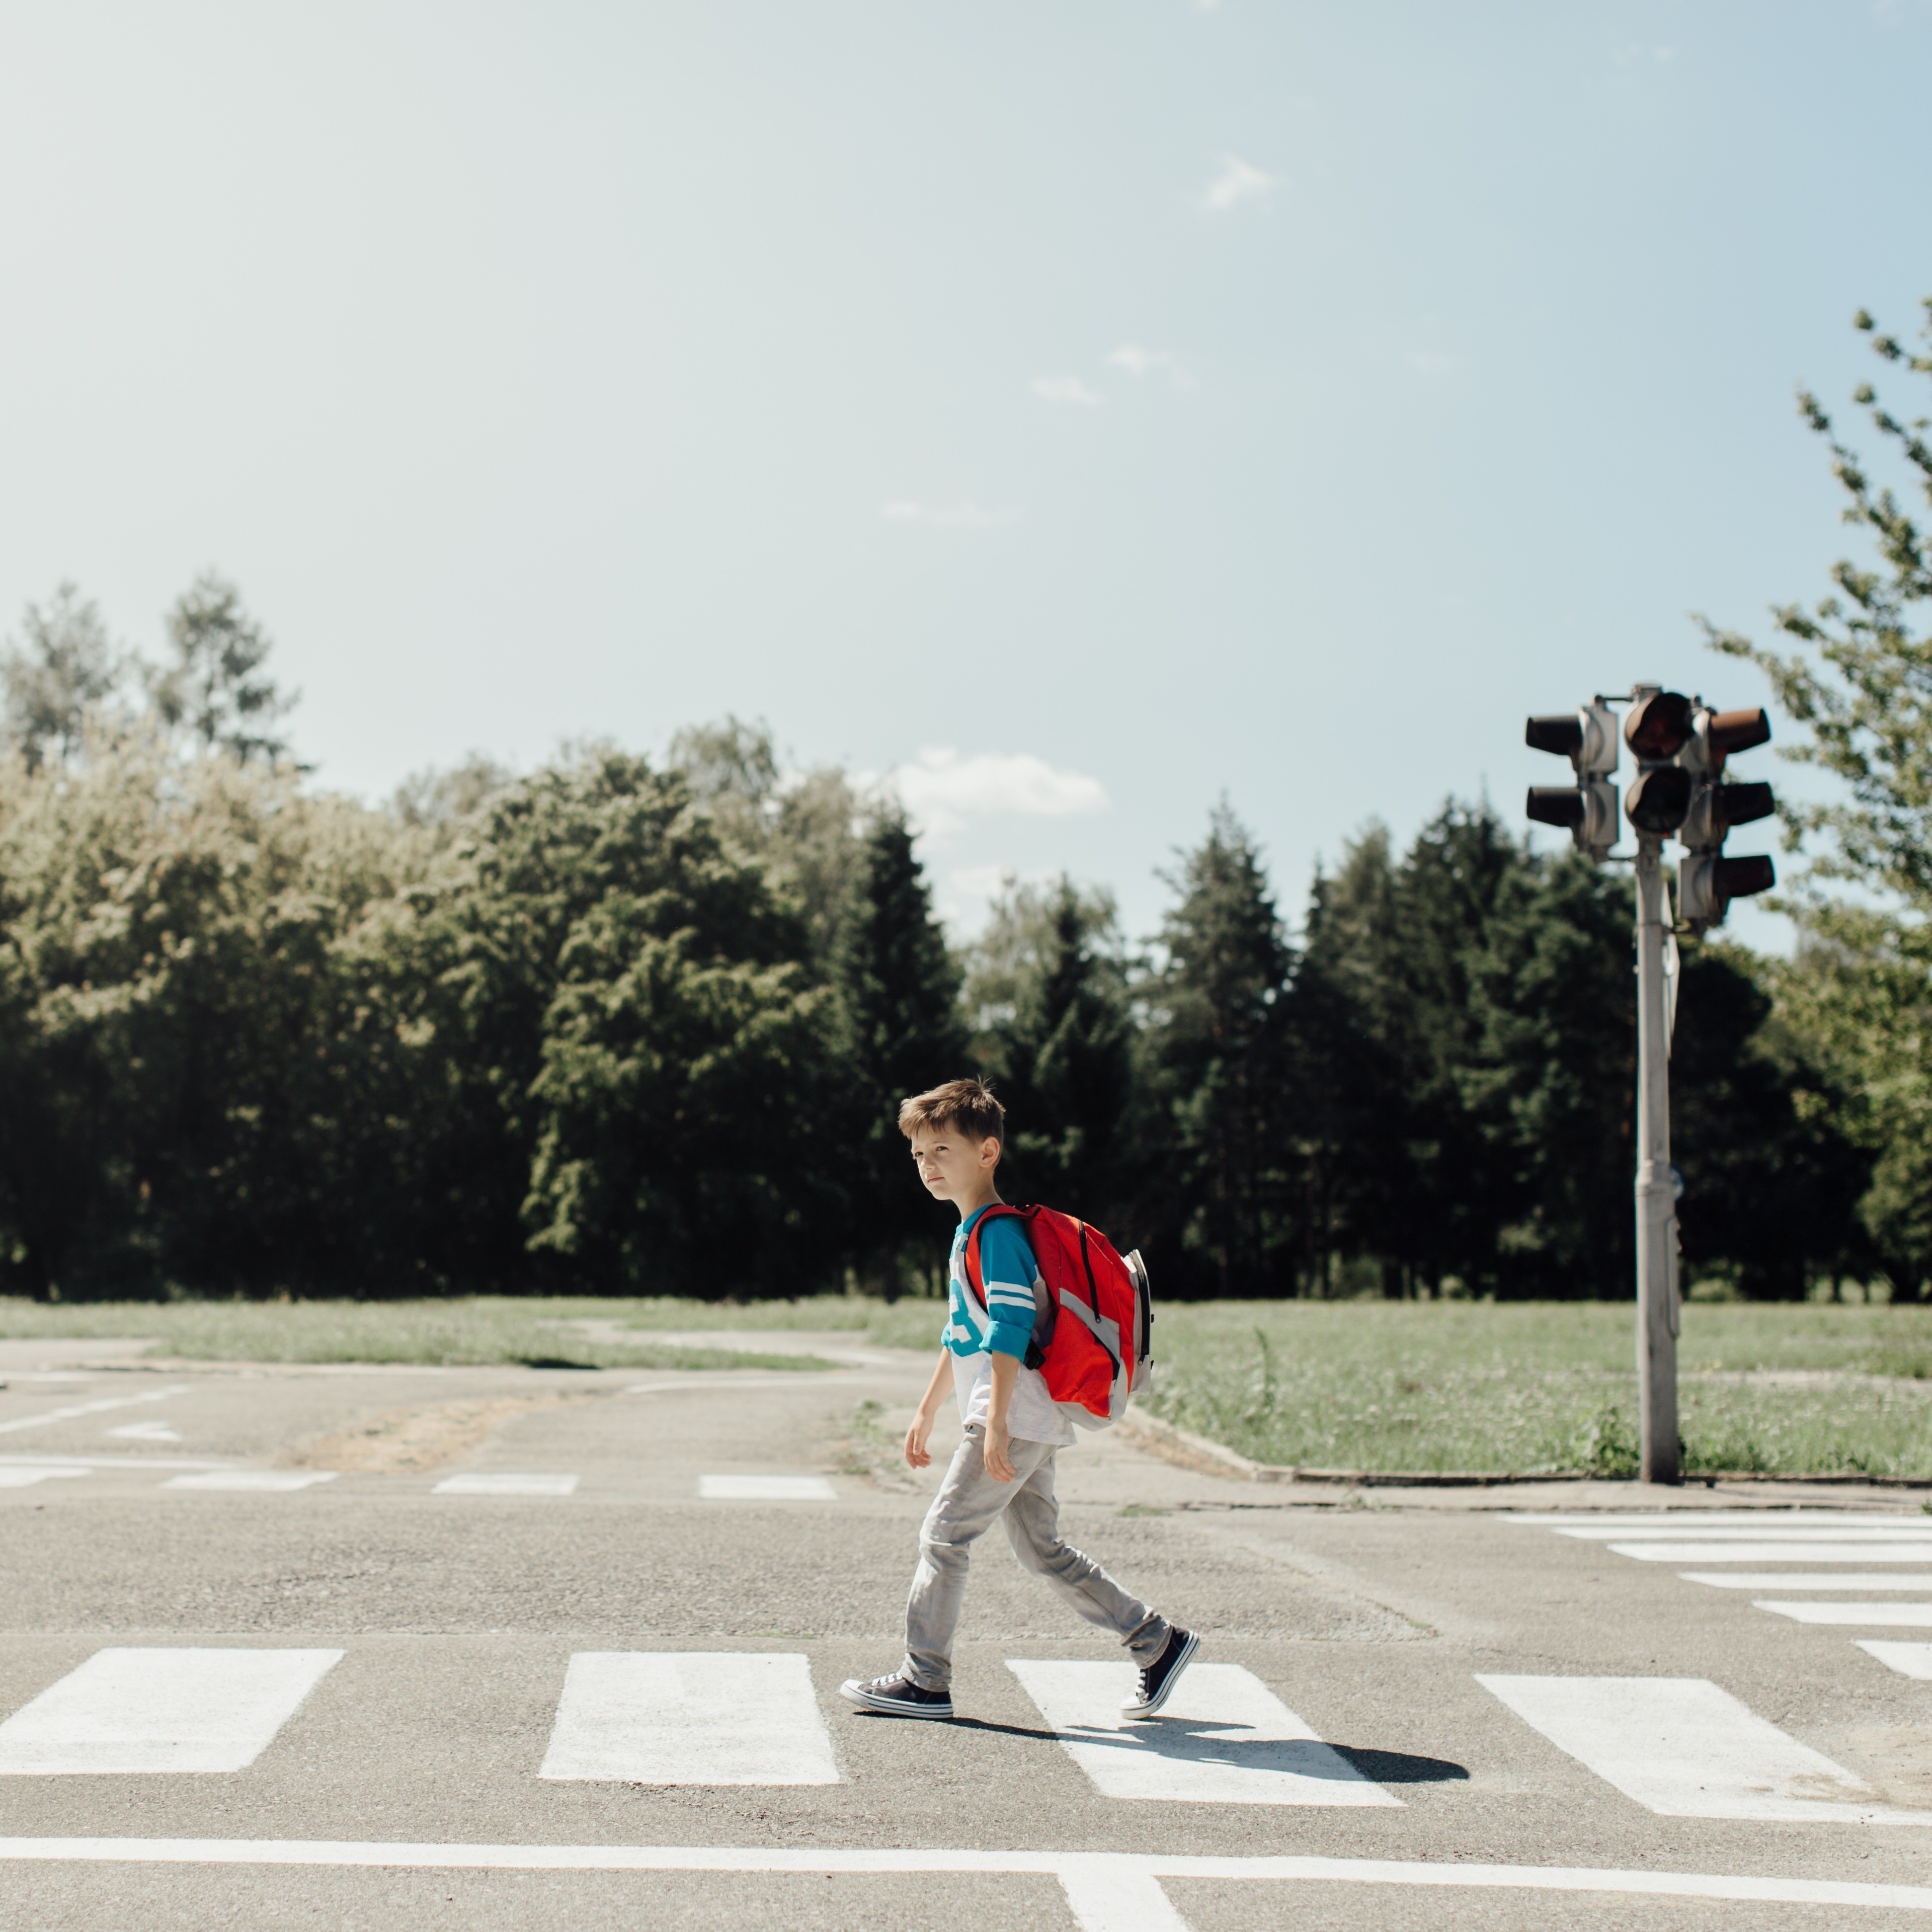 Ein Schuljunge mit einem roten Rucksack überquert eine Straße auf einem Zebrastreifen.  